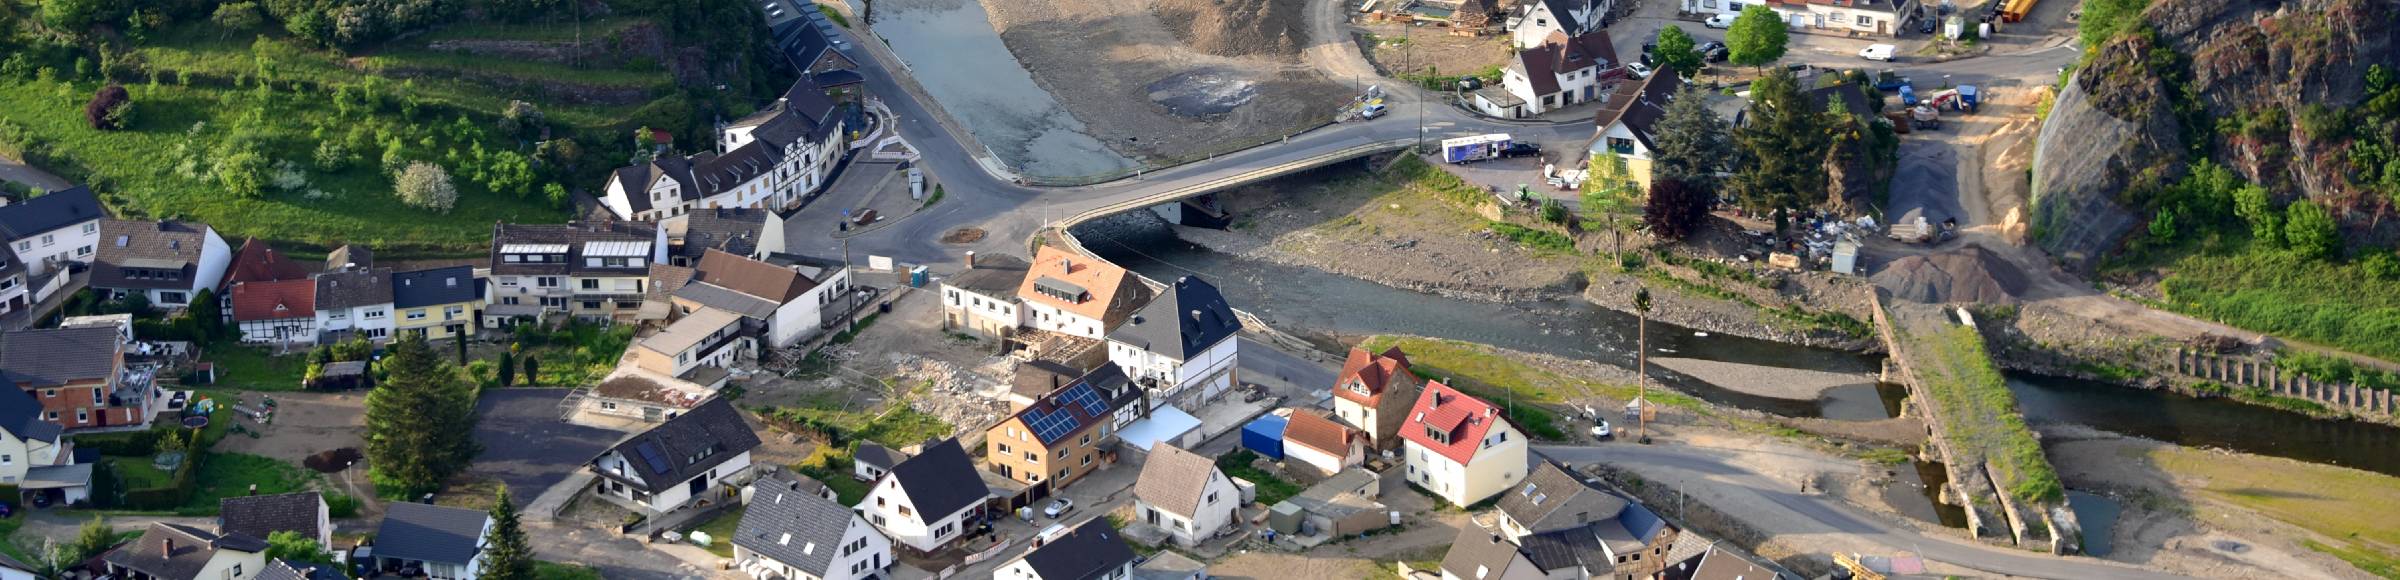 Hochwasserschäden der Flutkatastrophe am Flußverlauf der Ahr in Altenahr im Bundesland Rheinland-Pfalz, Deutschland